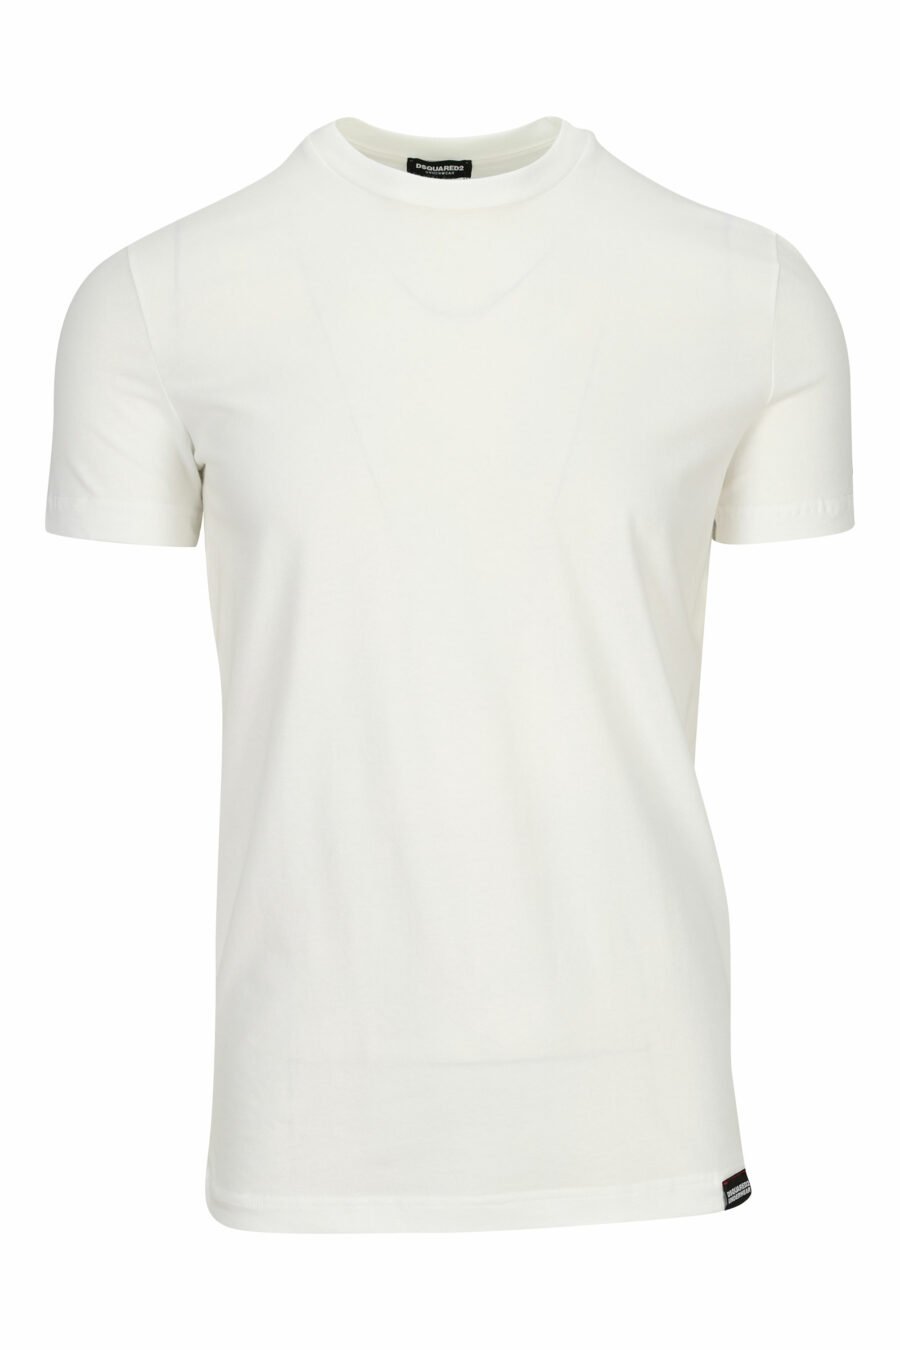 T-shirt blanc avec "sous-vêtements" en minilogue - 8032674811561